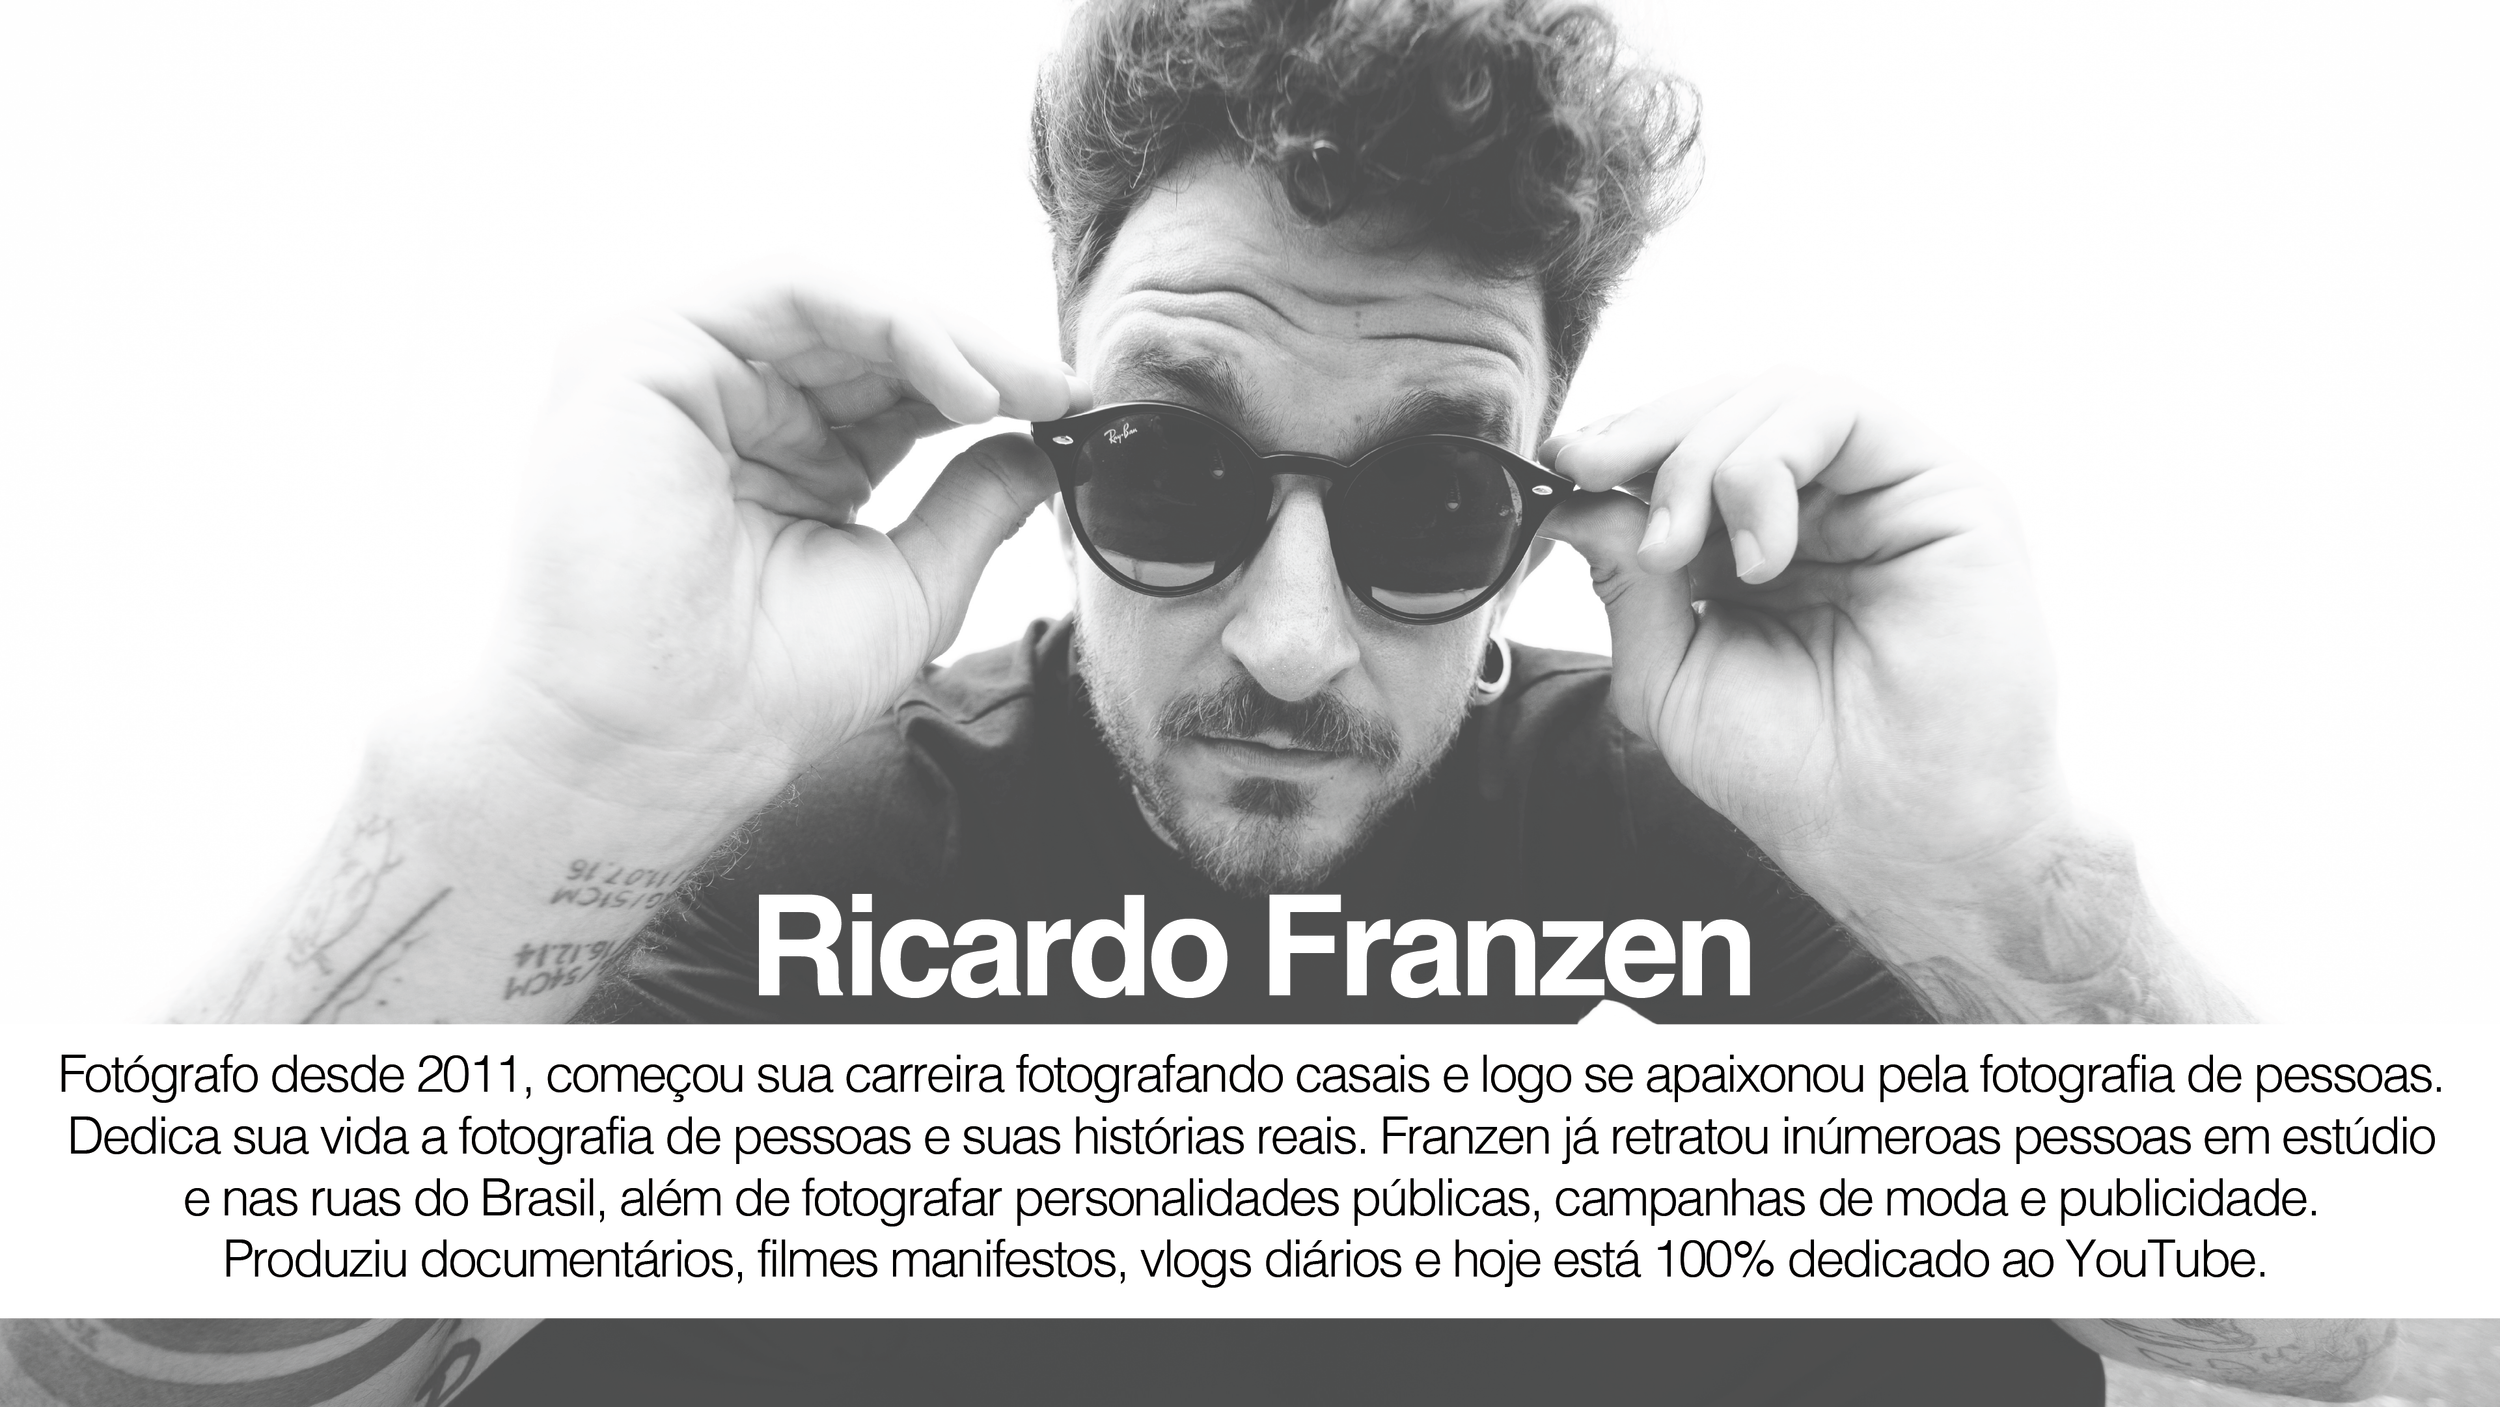 Ricardo-Franzen-Mentoria-para-fotografos-mentoria-para-videomaker-filmmaker-mentoria-para-youtuber-consultoria-de-imagem2.png